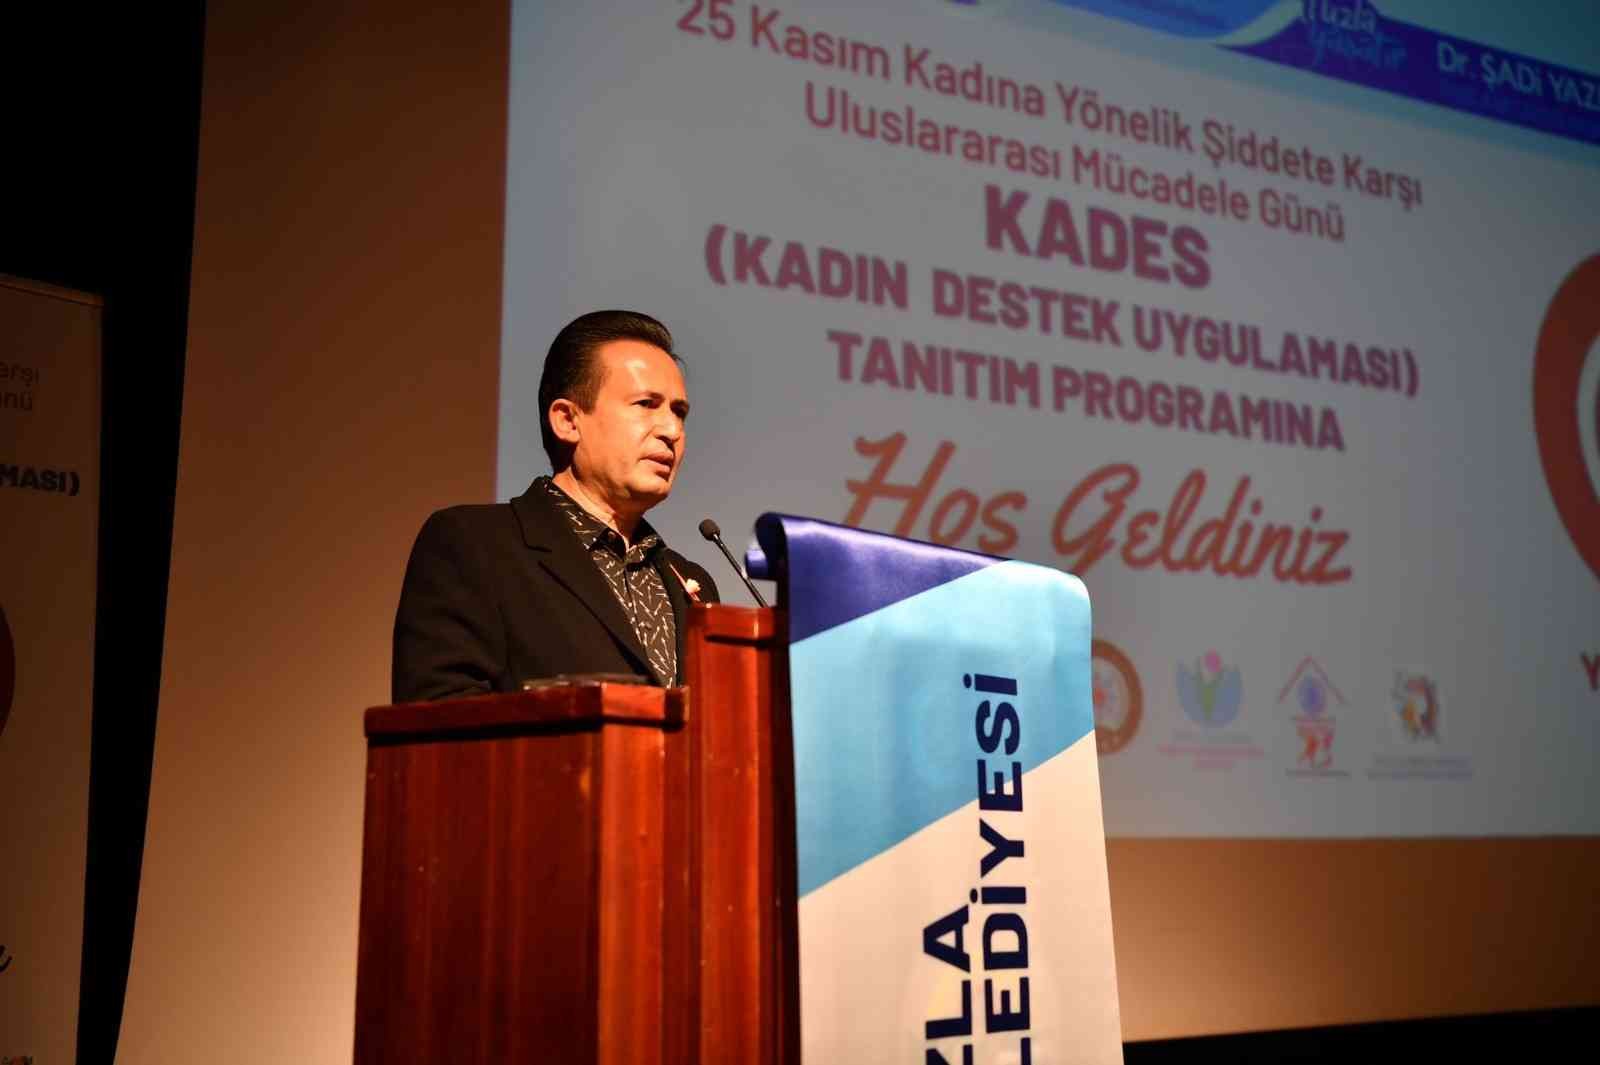 Tuzla’da KADES Uygulaması tanıtım seminerleri düzenlendi #istanbul